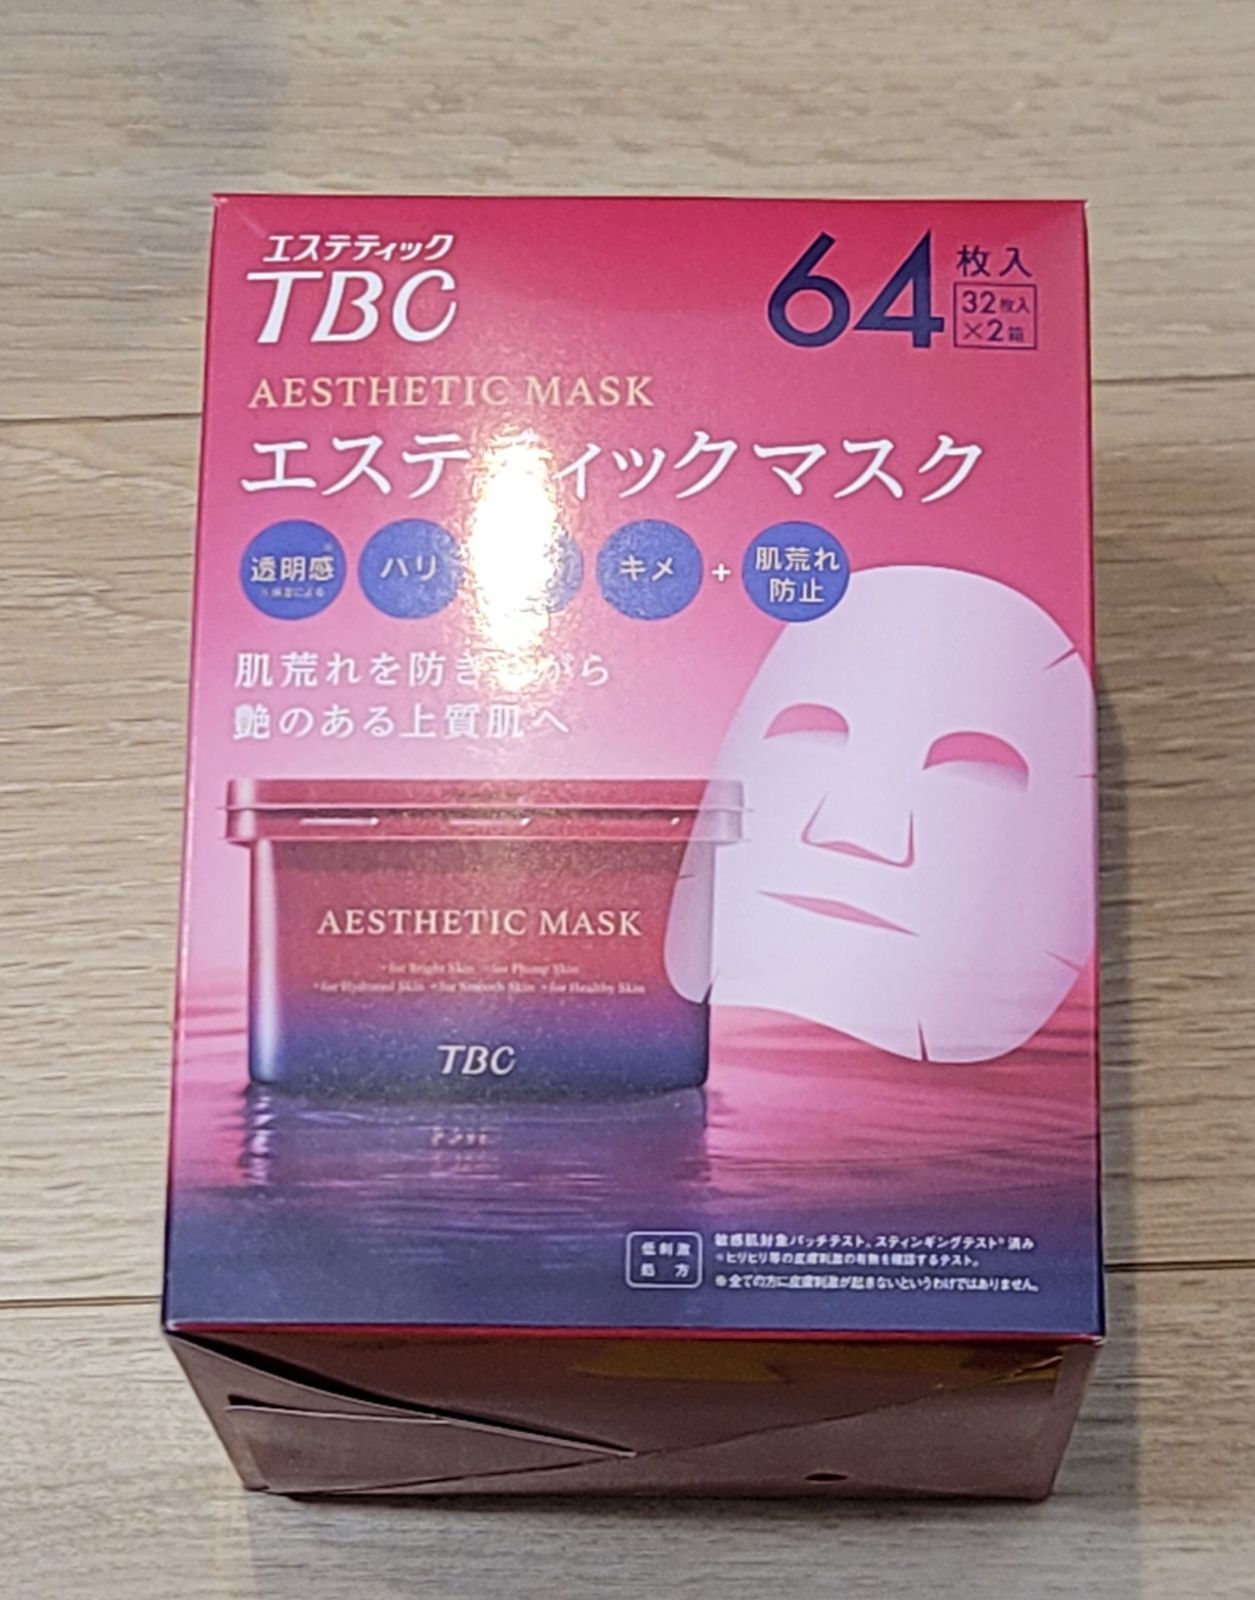 TBC エステティックマスク 1箱(32枚入×2箱) - ケンキンショップ - メルカリ